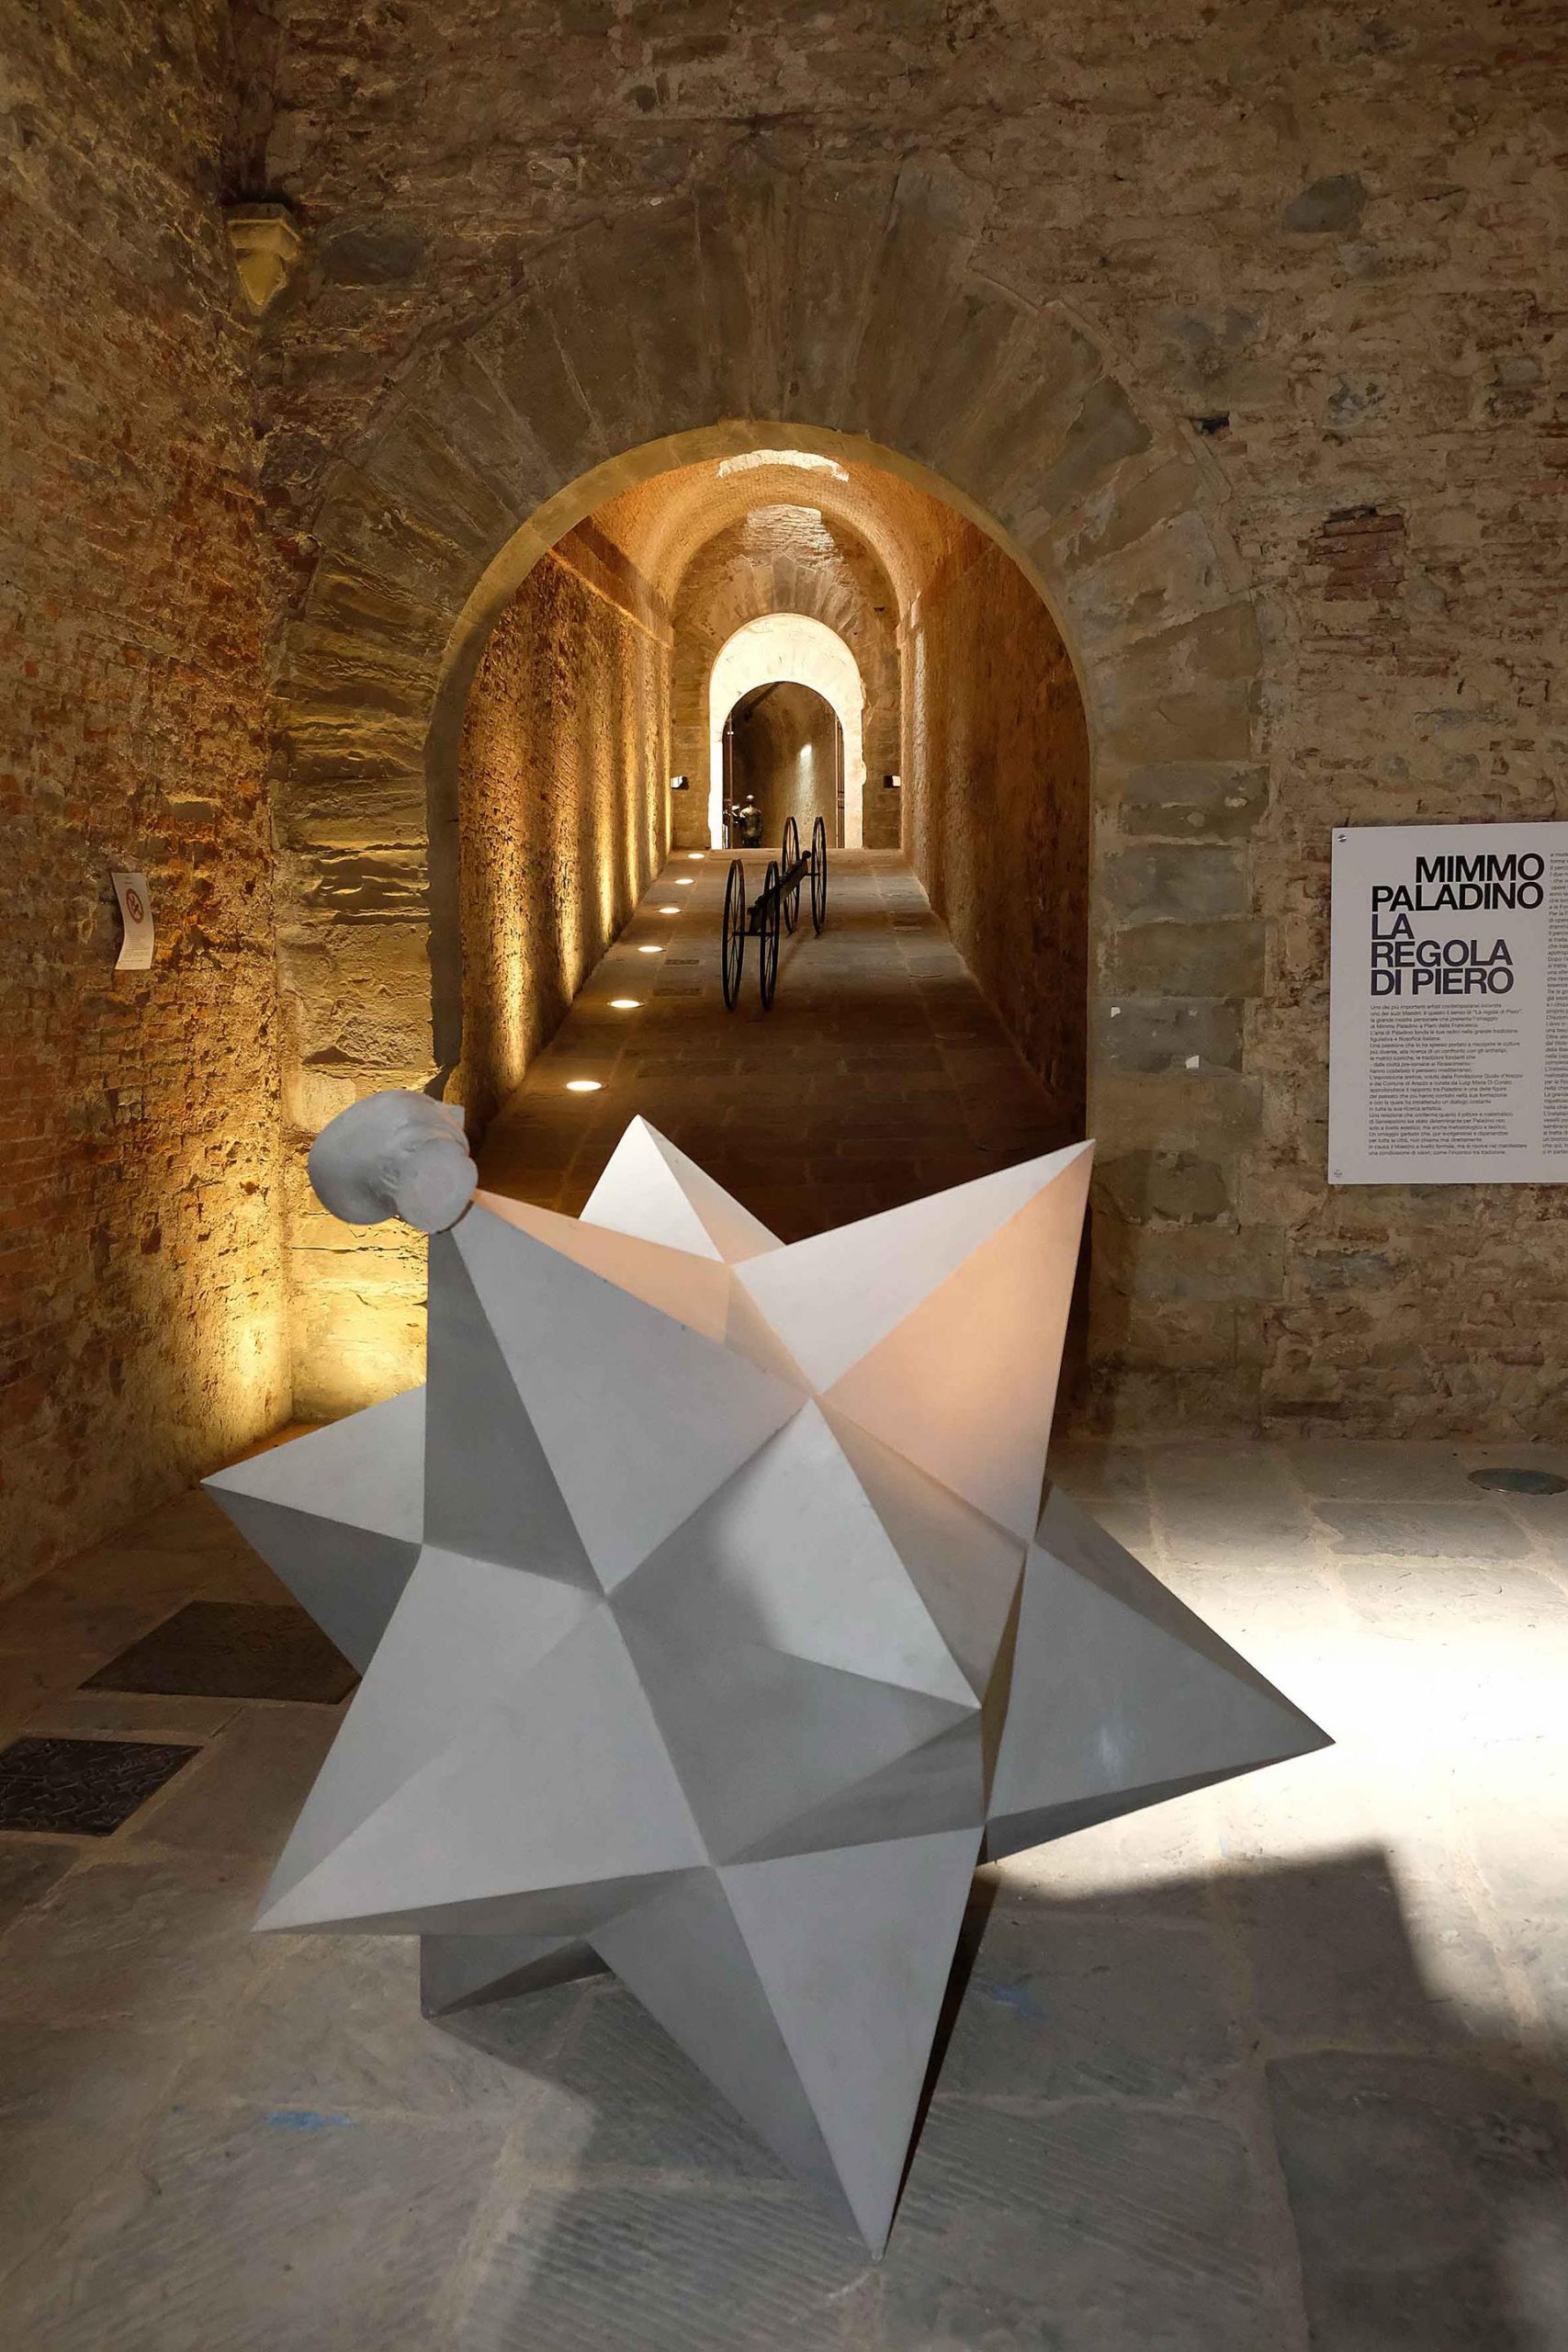 Ad Arezzo riapre “La regola di Piero”:  c’è tempo fino al 30 settembre per visitare gratuitamente la mostra di Mimmo Paladino